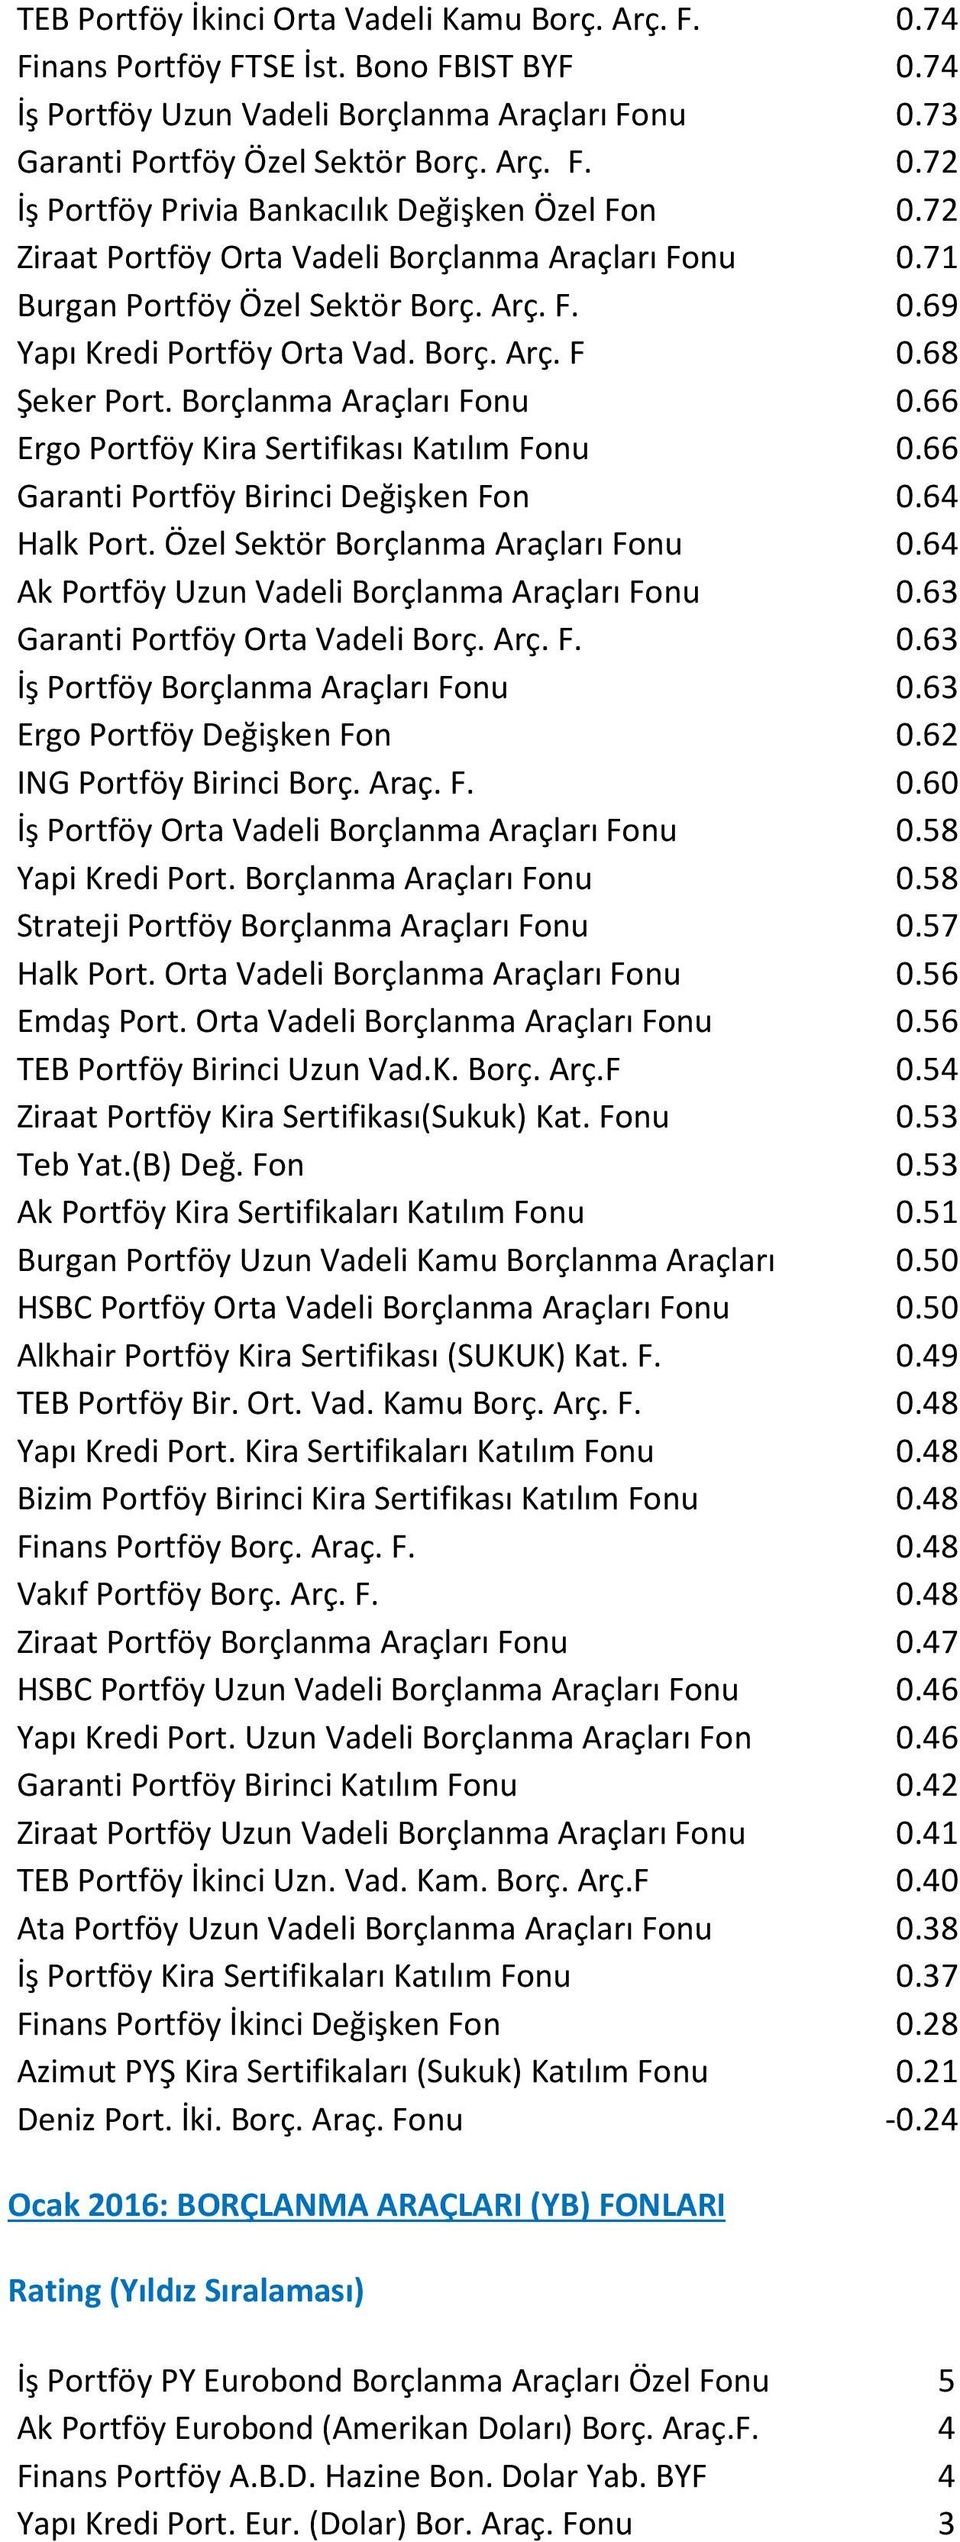 66 Garanti Portföy Birinci Değişken Fon 0.64 Halk Port. Özel Sektör Borçlanma Araçları Fonu 0.64 Ak Portföy Uzun Vadeli Borçlanma Araçları Fonu 0.63 Garanti Portföy Orta Vadeli Borç. Arç. F. 0.63 İş Portföy Borçlanma Araçları Fonu 0.